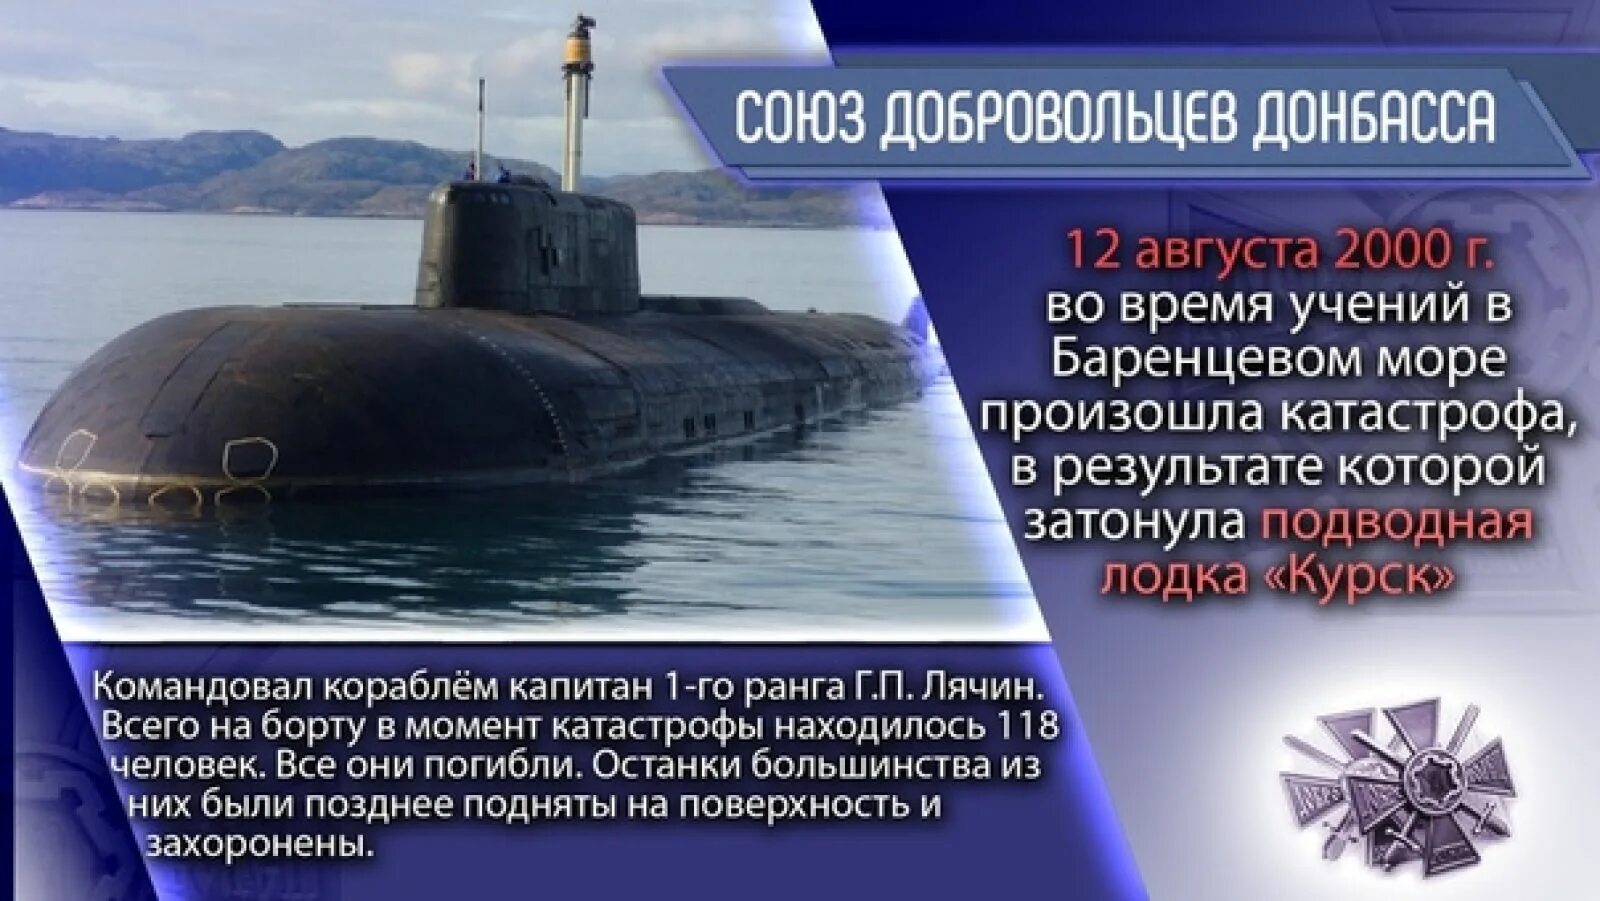 Подводная лодка к-141 «Курск». 12 Августа 2000 Курск подводная лодка. К-141 «Курск» катастрофа. Гибель экипажа атомной подводной лодки к-141 «Курск».. Подводная лодка сколько погибло